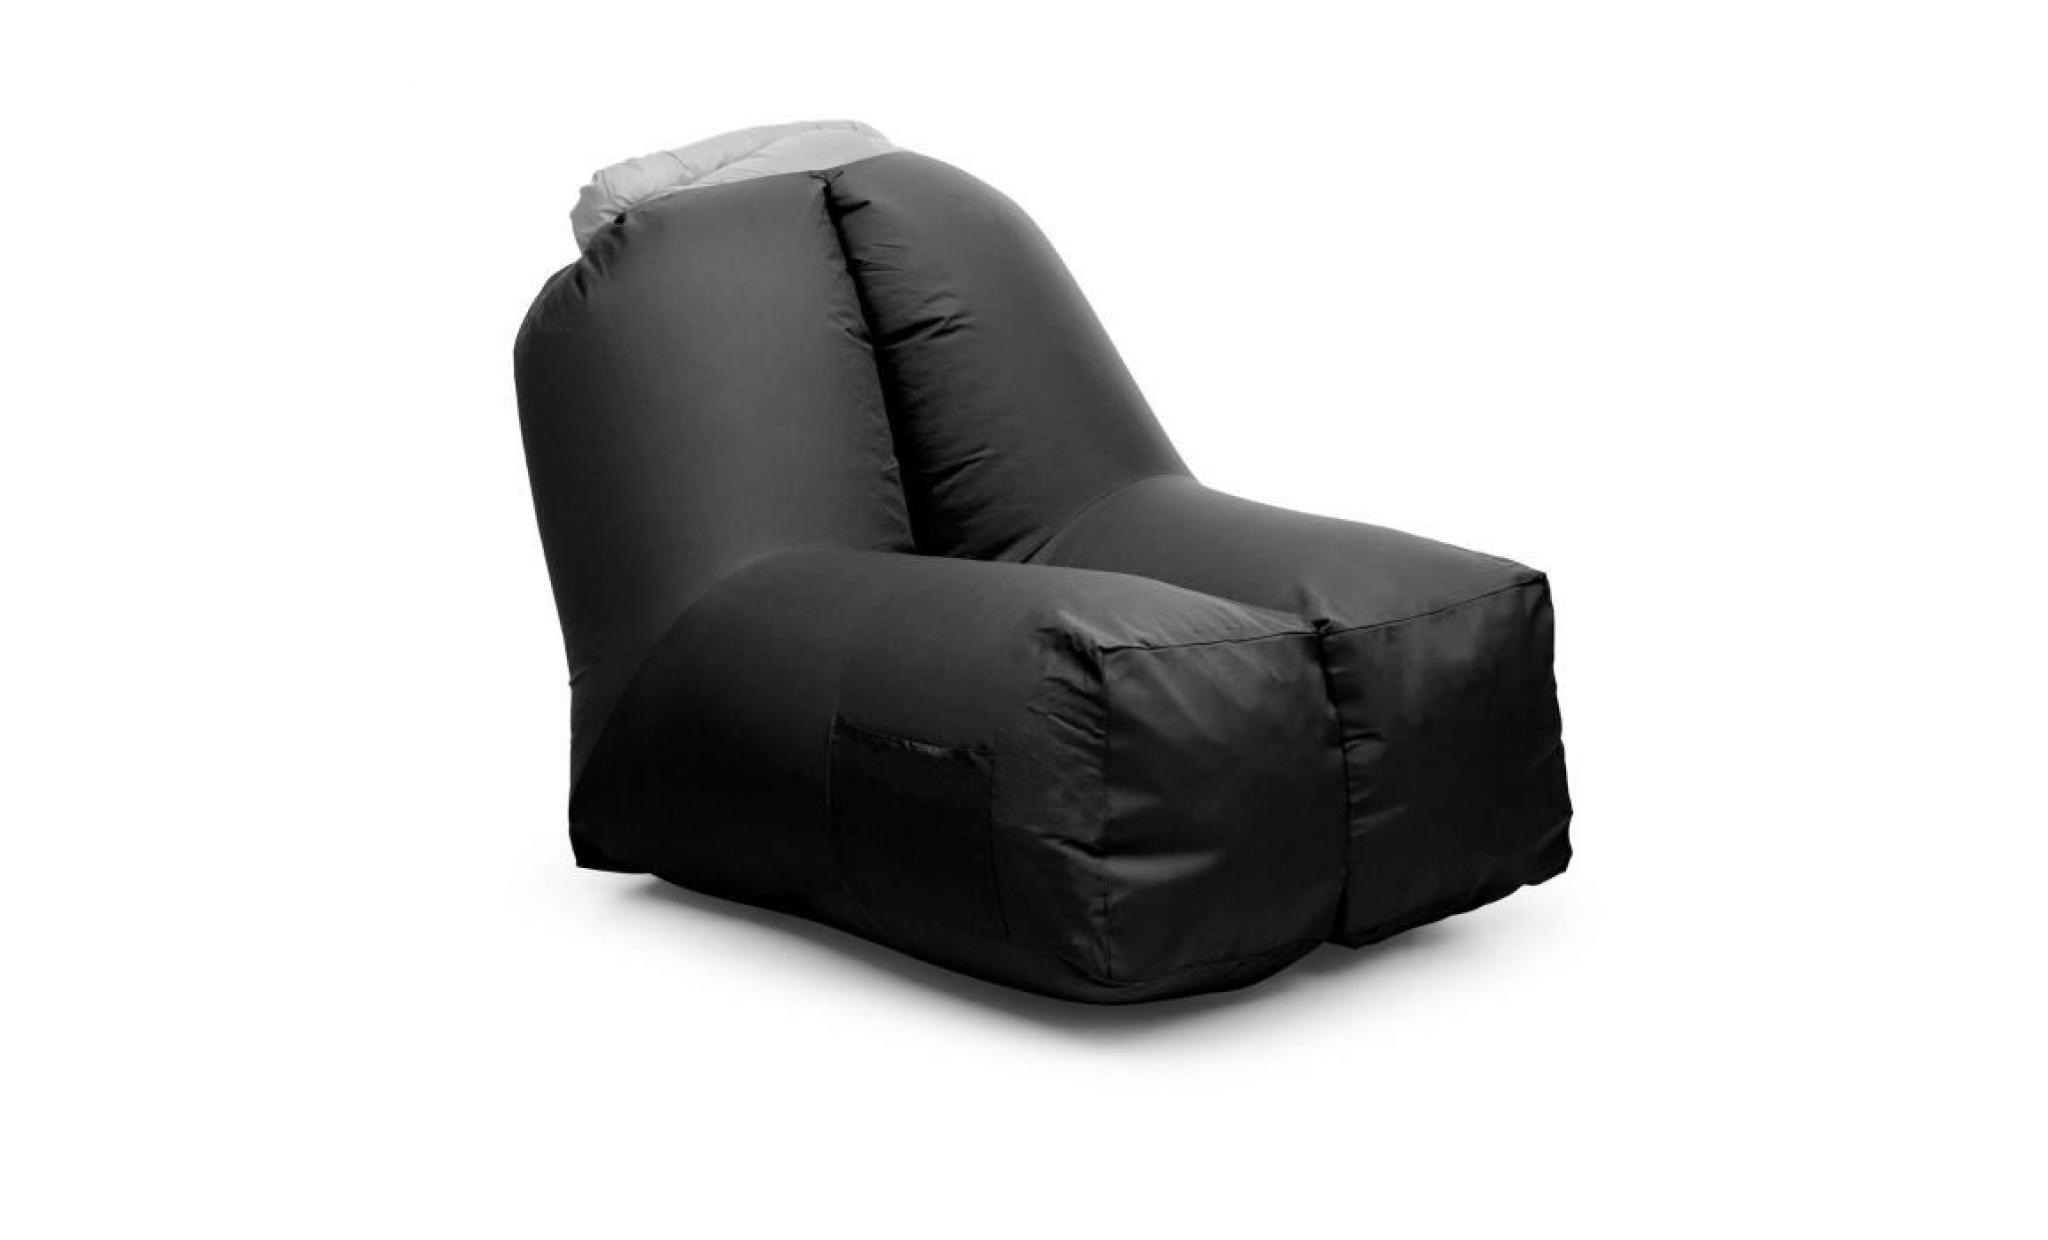 blumfeldt airchair fauteuil gonflable  de jardin 80 x 80 x 100cm   sac à dos de transport lavable inclus   housse polyester   noir